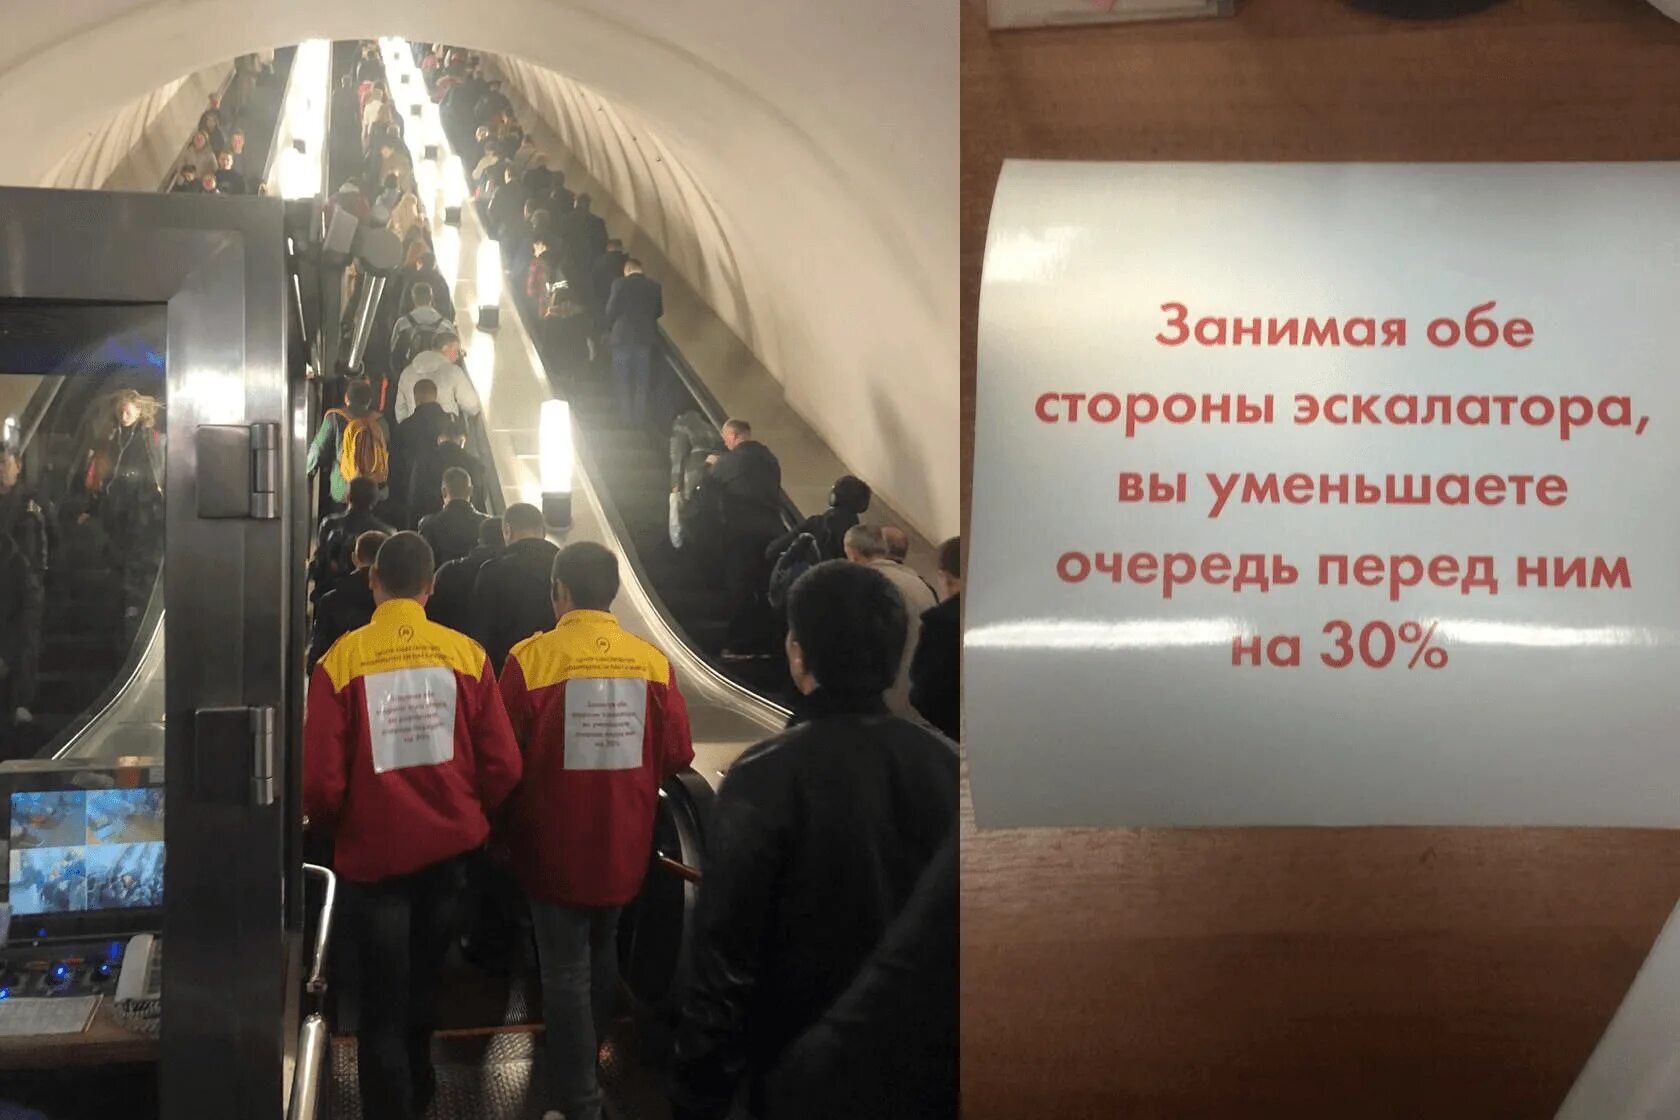 Очередь на эскалатор в метро. Занимайте обе стороны эскалатора. Очередь к эскалаторам метро Москвы. Очередь на эскалатор в Московском метро.